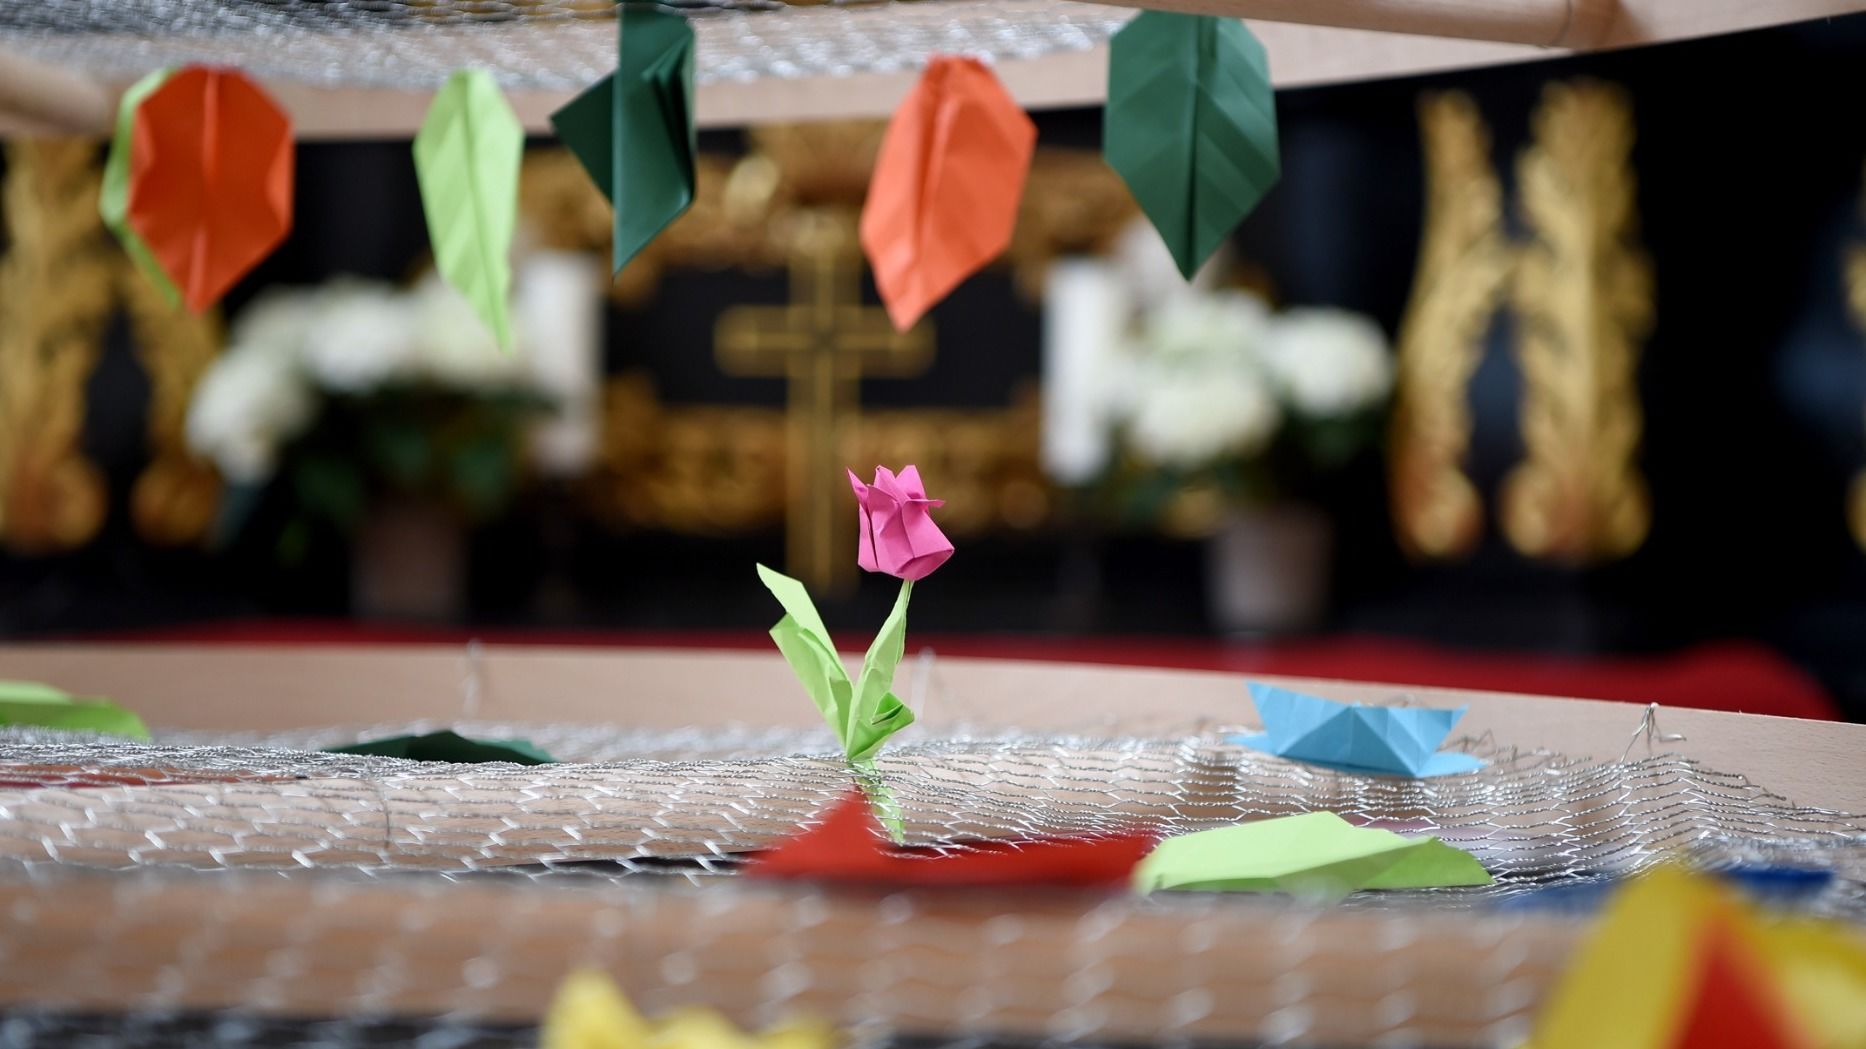 Auf Wachstums-Kurs: In der Andreaskapelle steht ein großer Baum, dessen Origamiblätter durch die Besucher des Doms nach und nach wachsen sollen. Foto: Bistum Fulda / Marzena Seidel